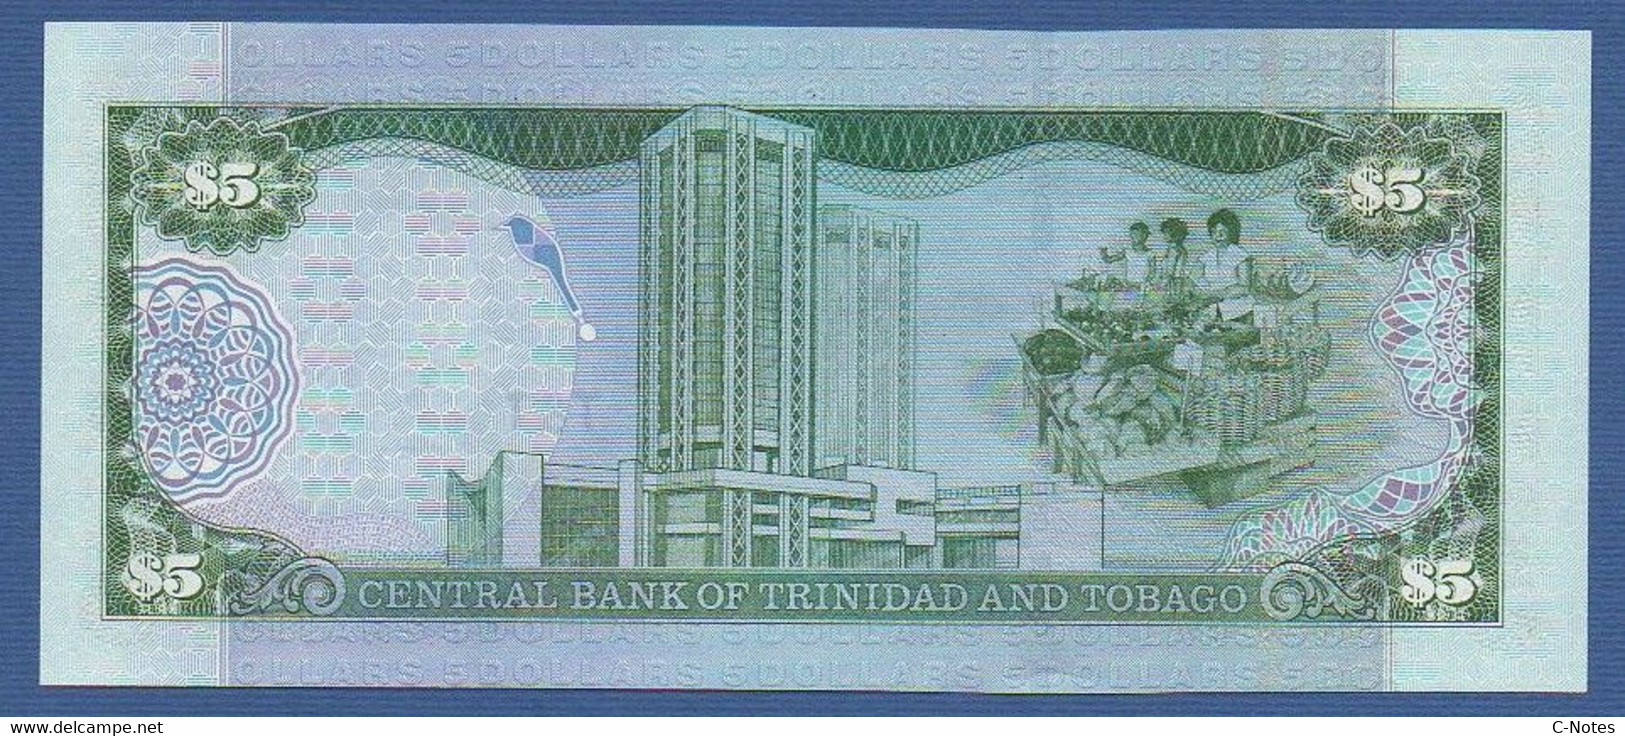 TRINIDAD & TOBAGO - P.42b – 5 Dollars 2002 UNC, Serie AM510295 - Trinidad & Tobago